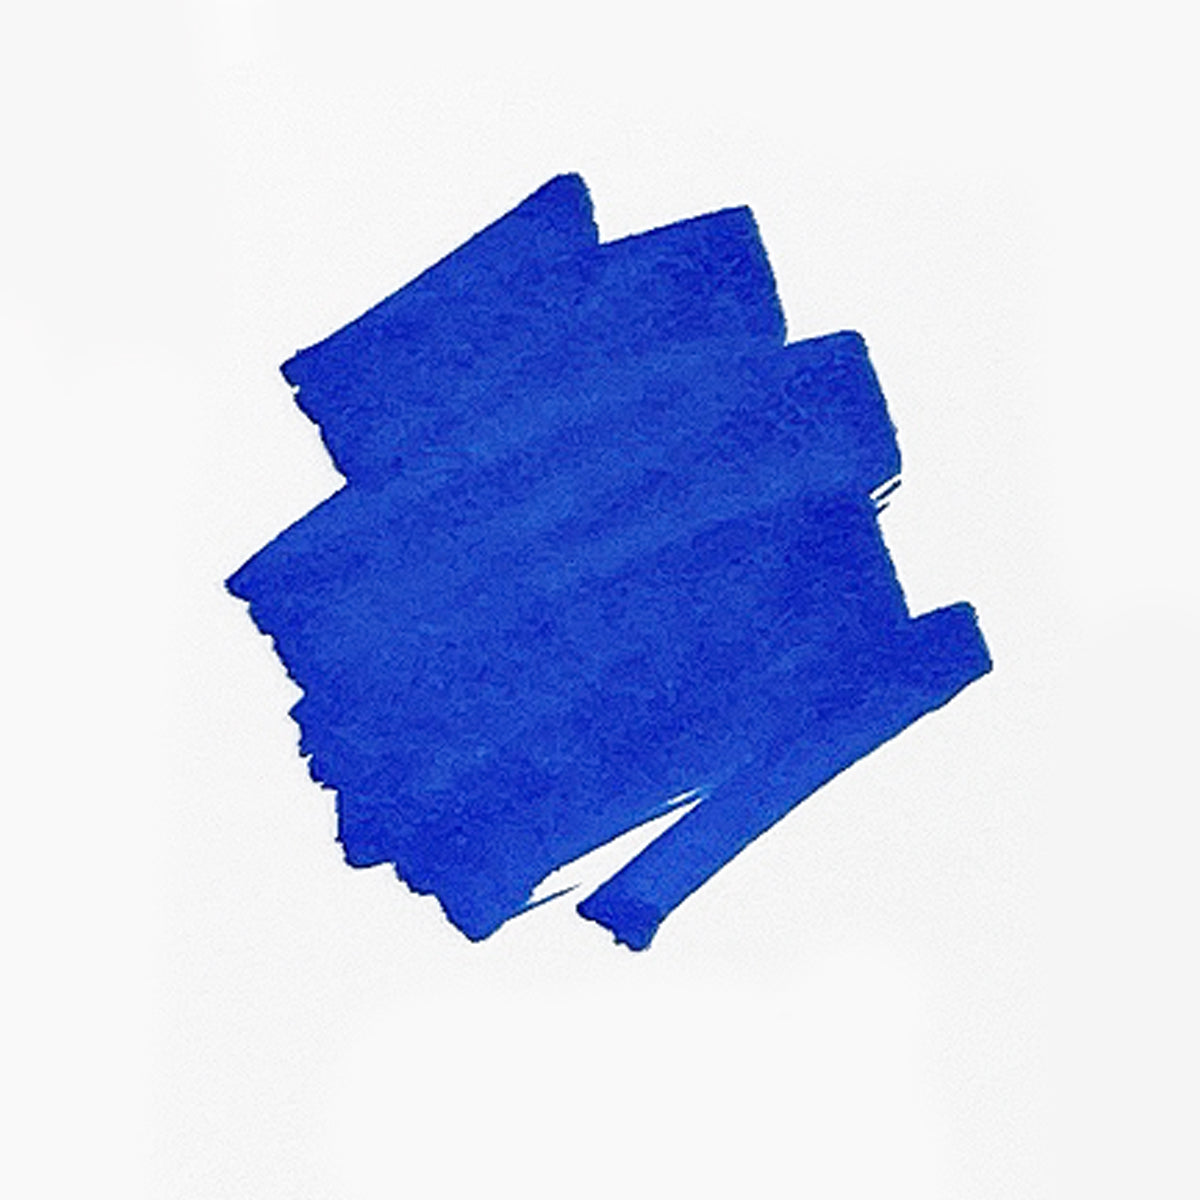 BLUES Copic Sketch Markers - Creative Escape